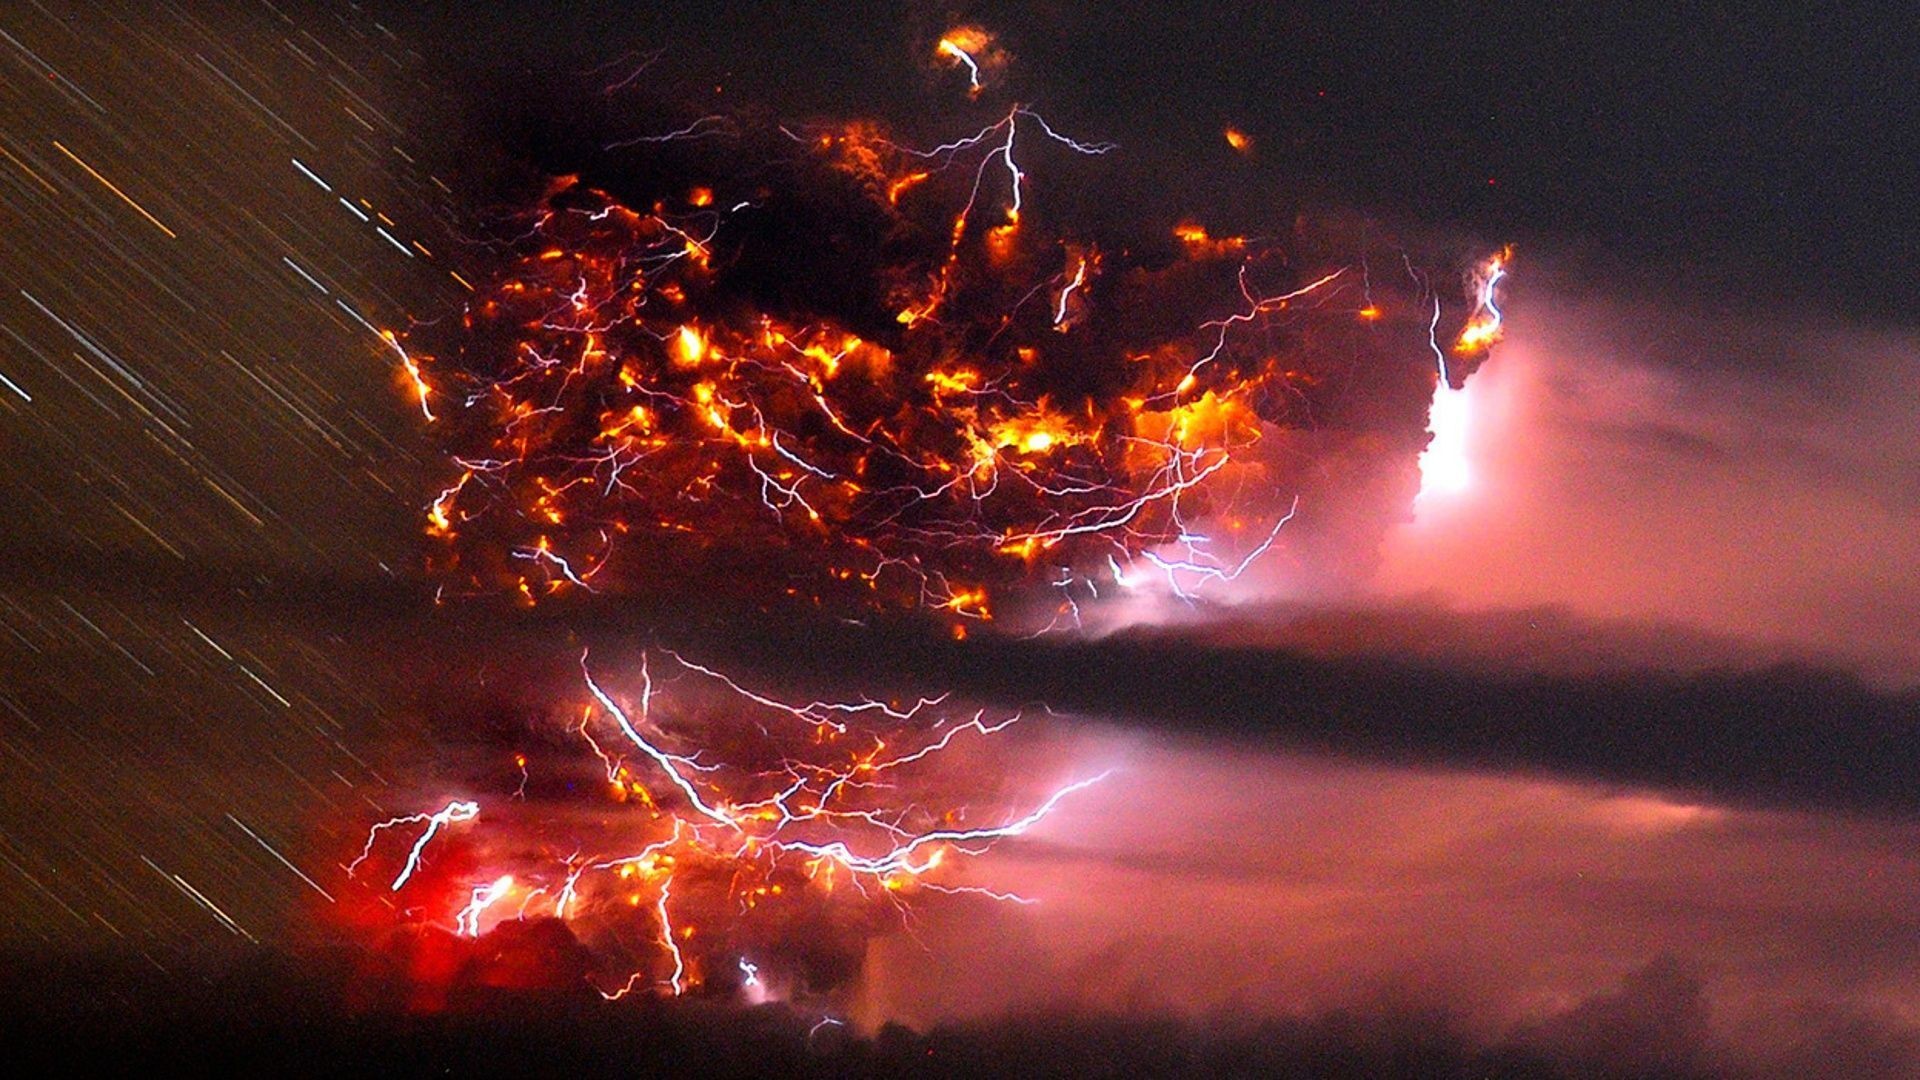 Ocean lightning storms – Google Search Lightning storms Pinterest Lightning, Storms and Nature wallpaper